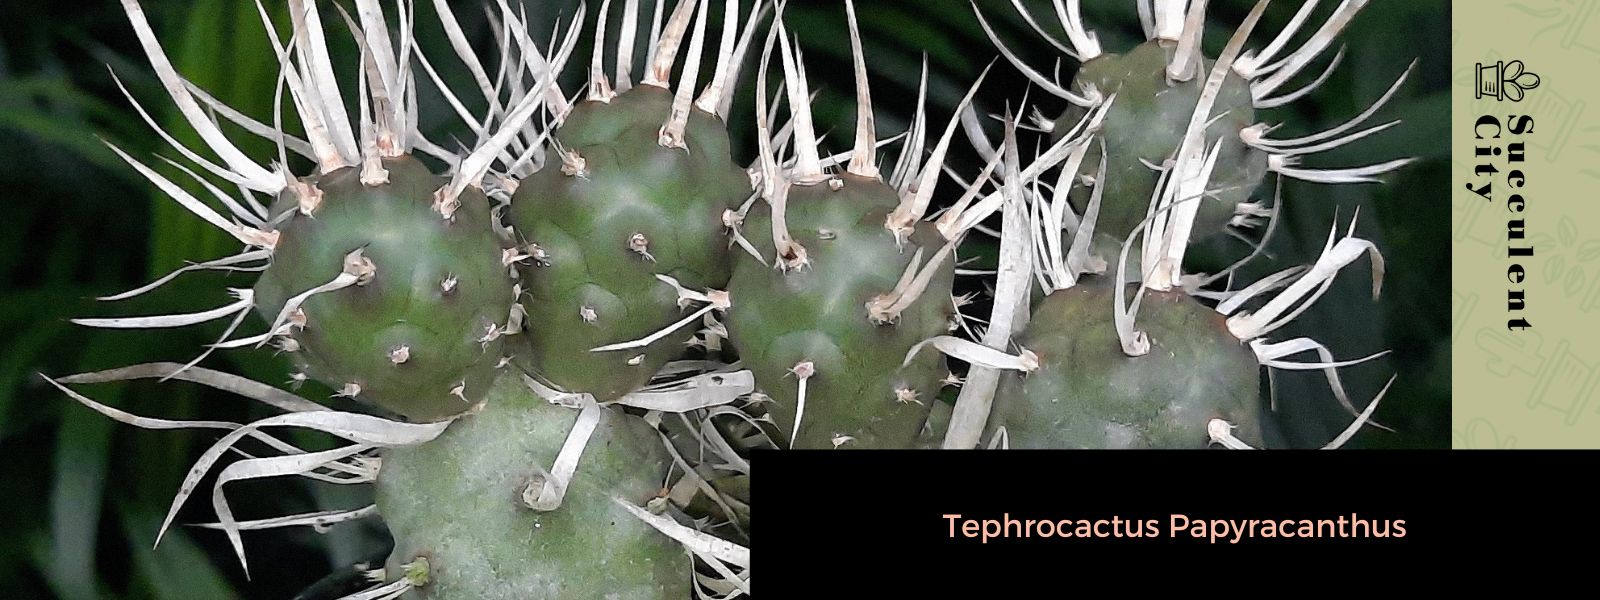 Tephrocactus Papyracanthus (El cactus de bolsillo)